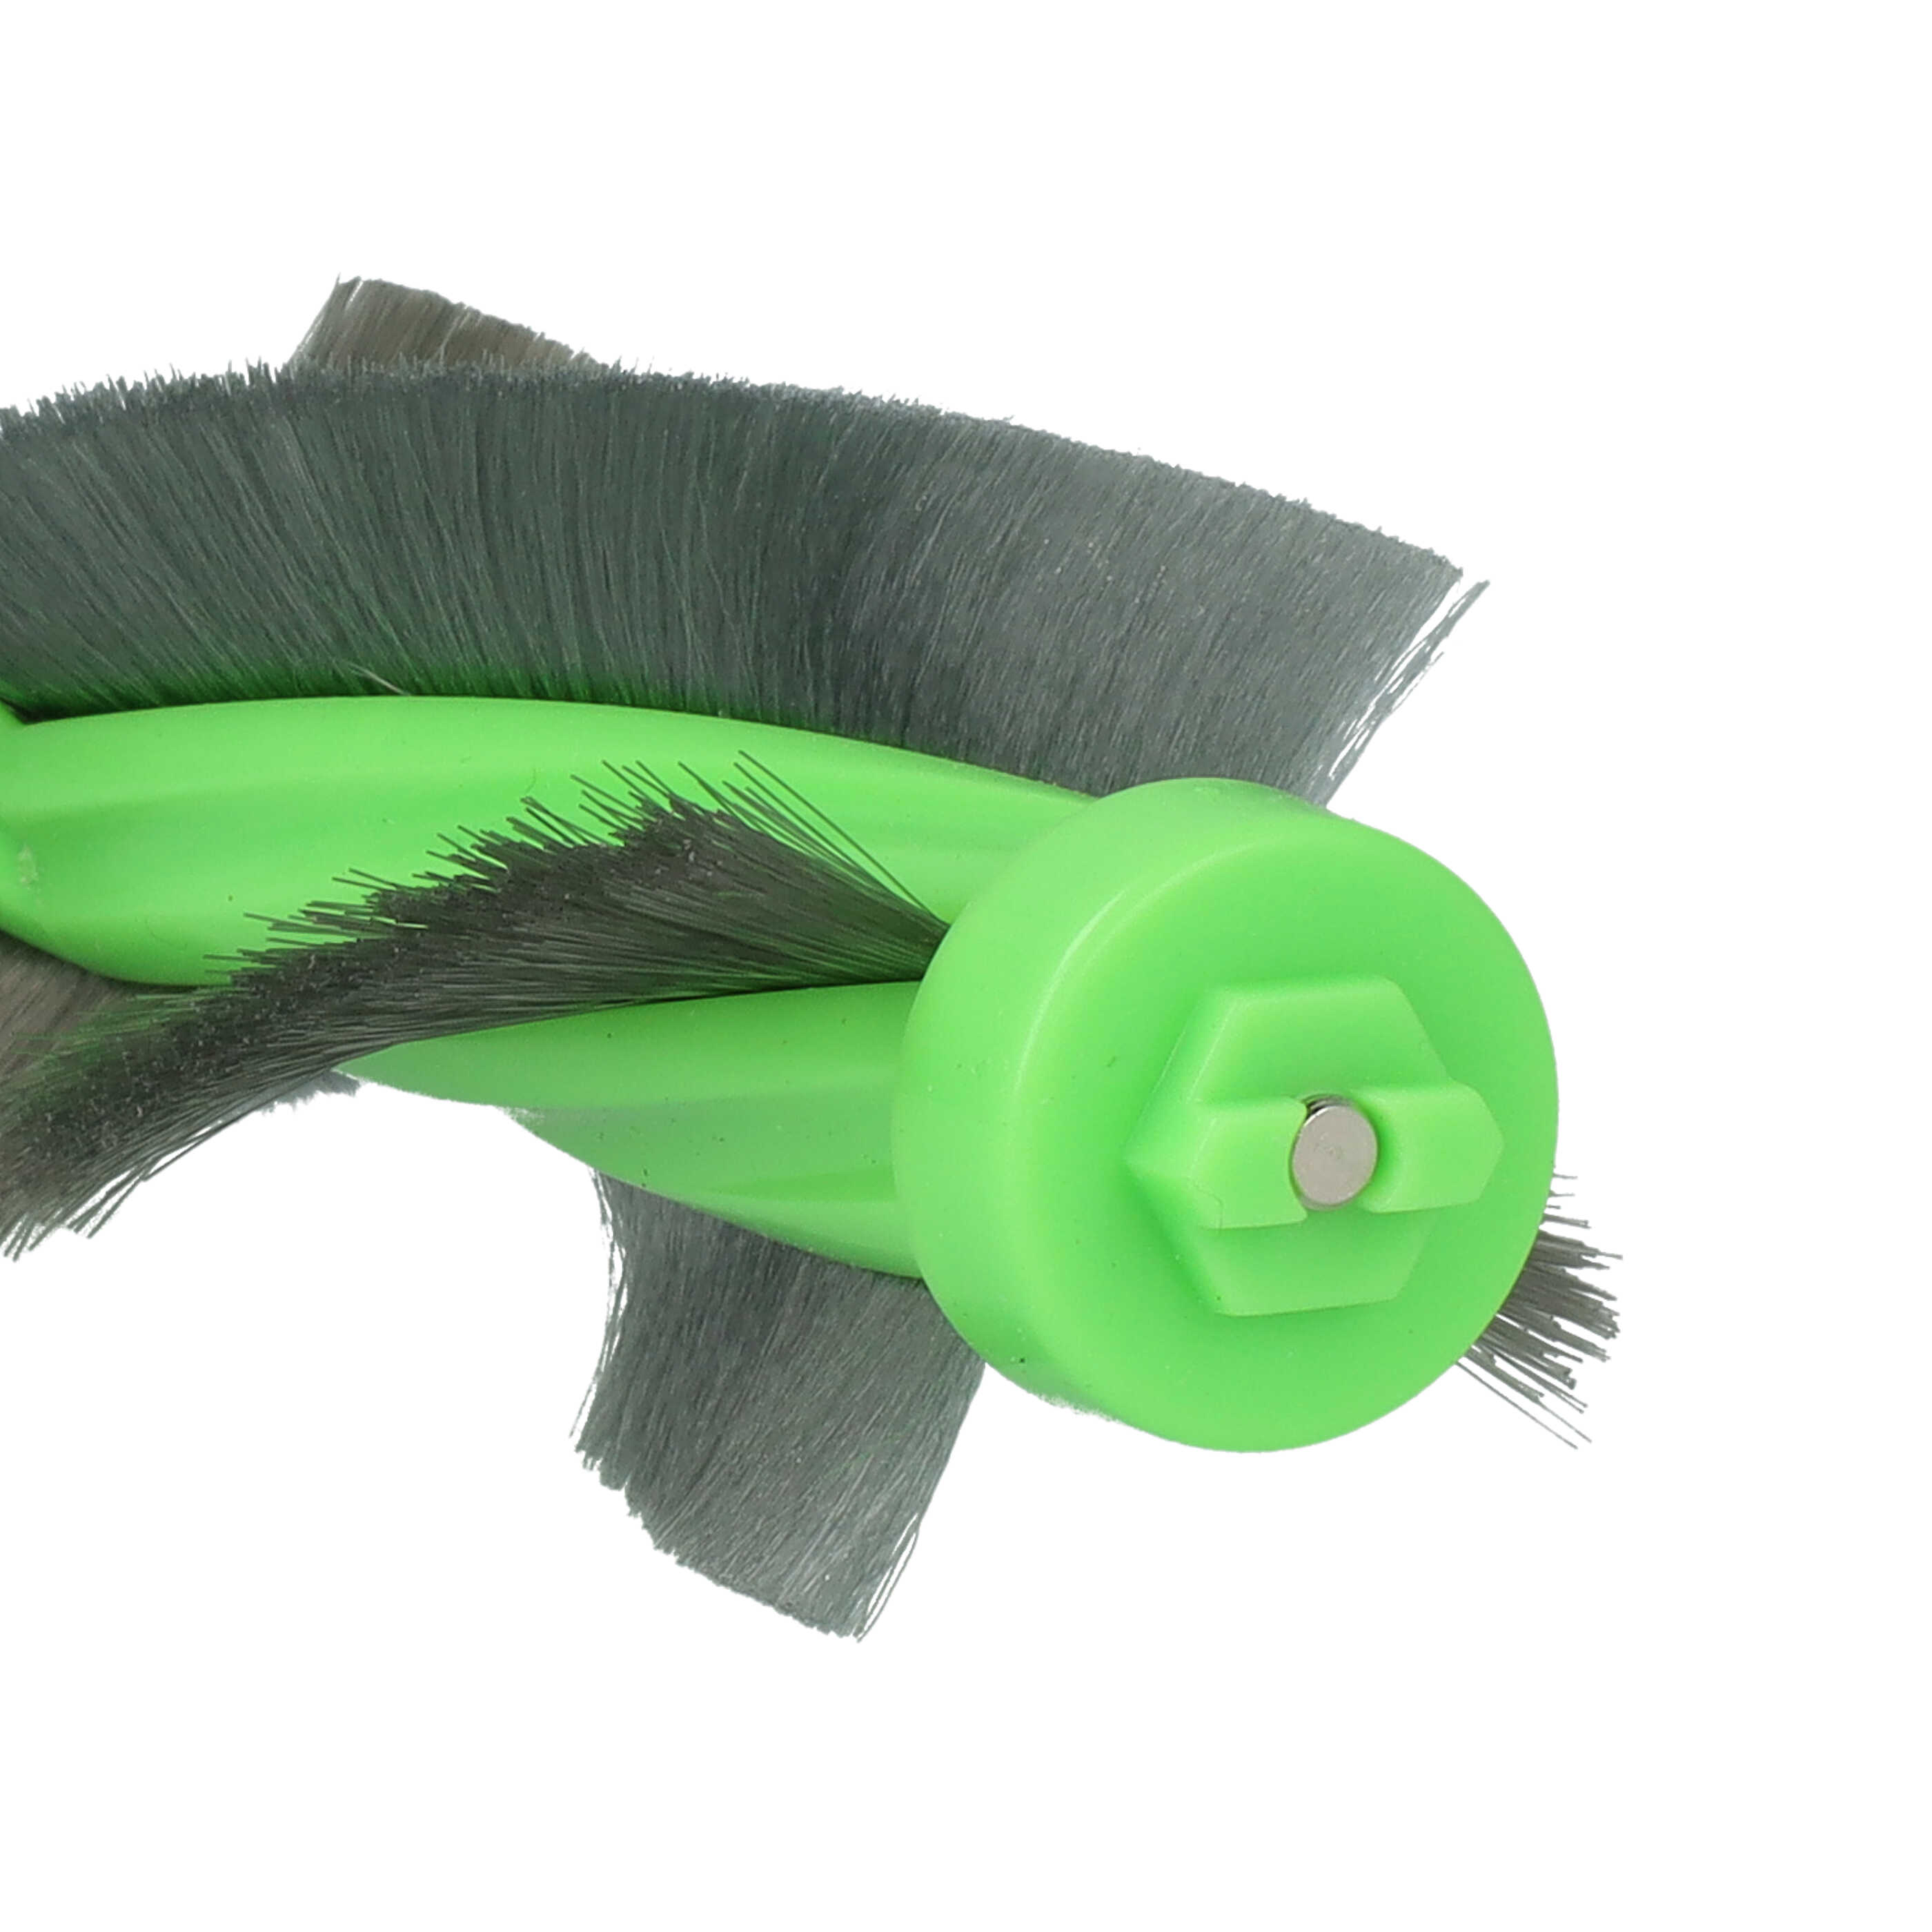  Round Brush suitable for iRobot Roomba E6Robot Vacuum Cleaner - Main Brush